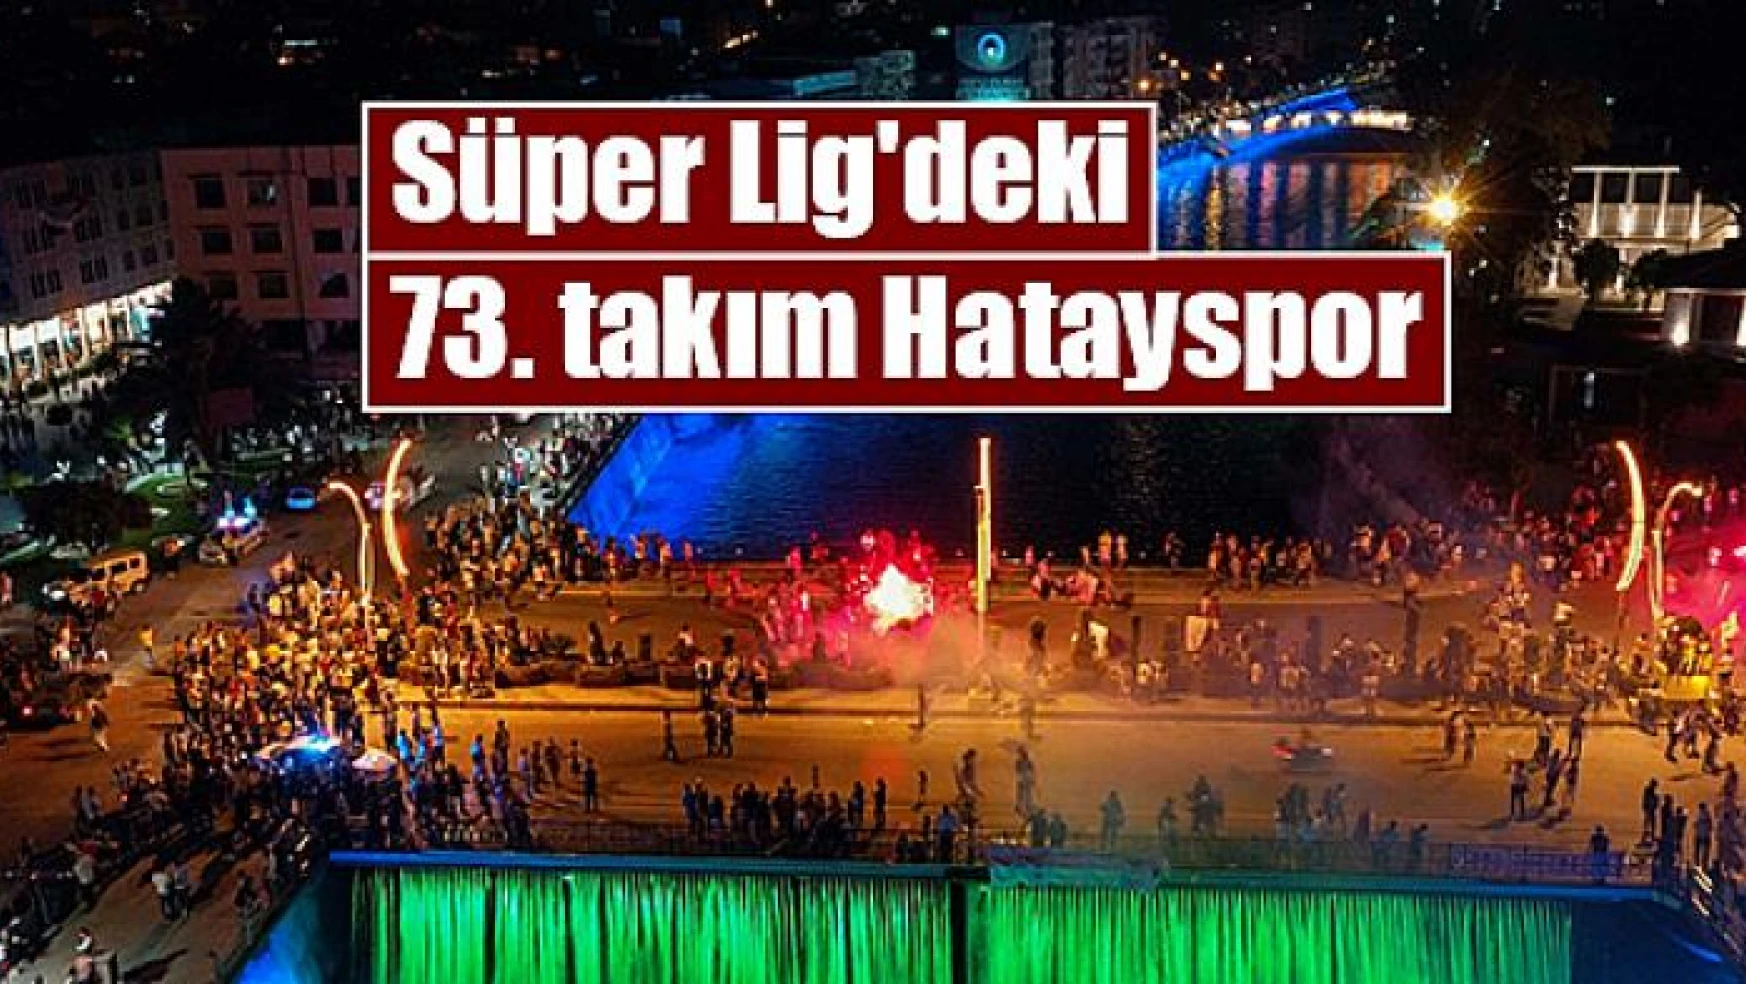 Süper Lig'deki 73. takım Hatayspor